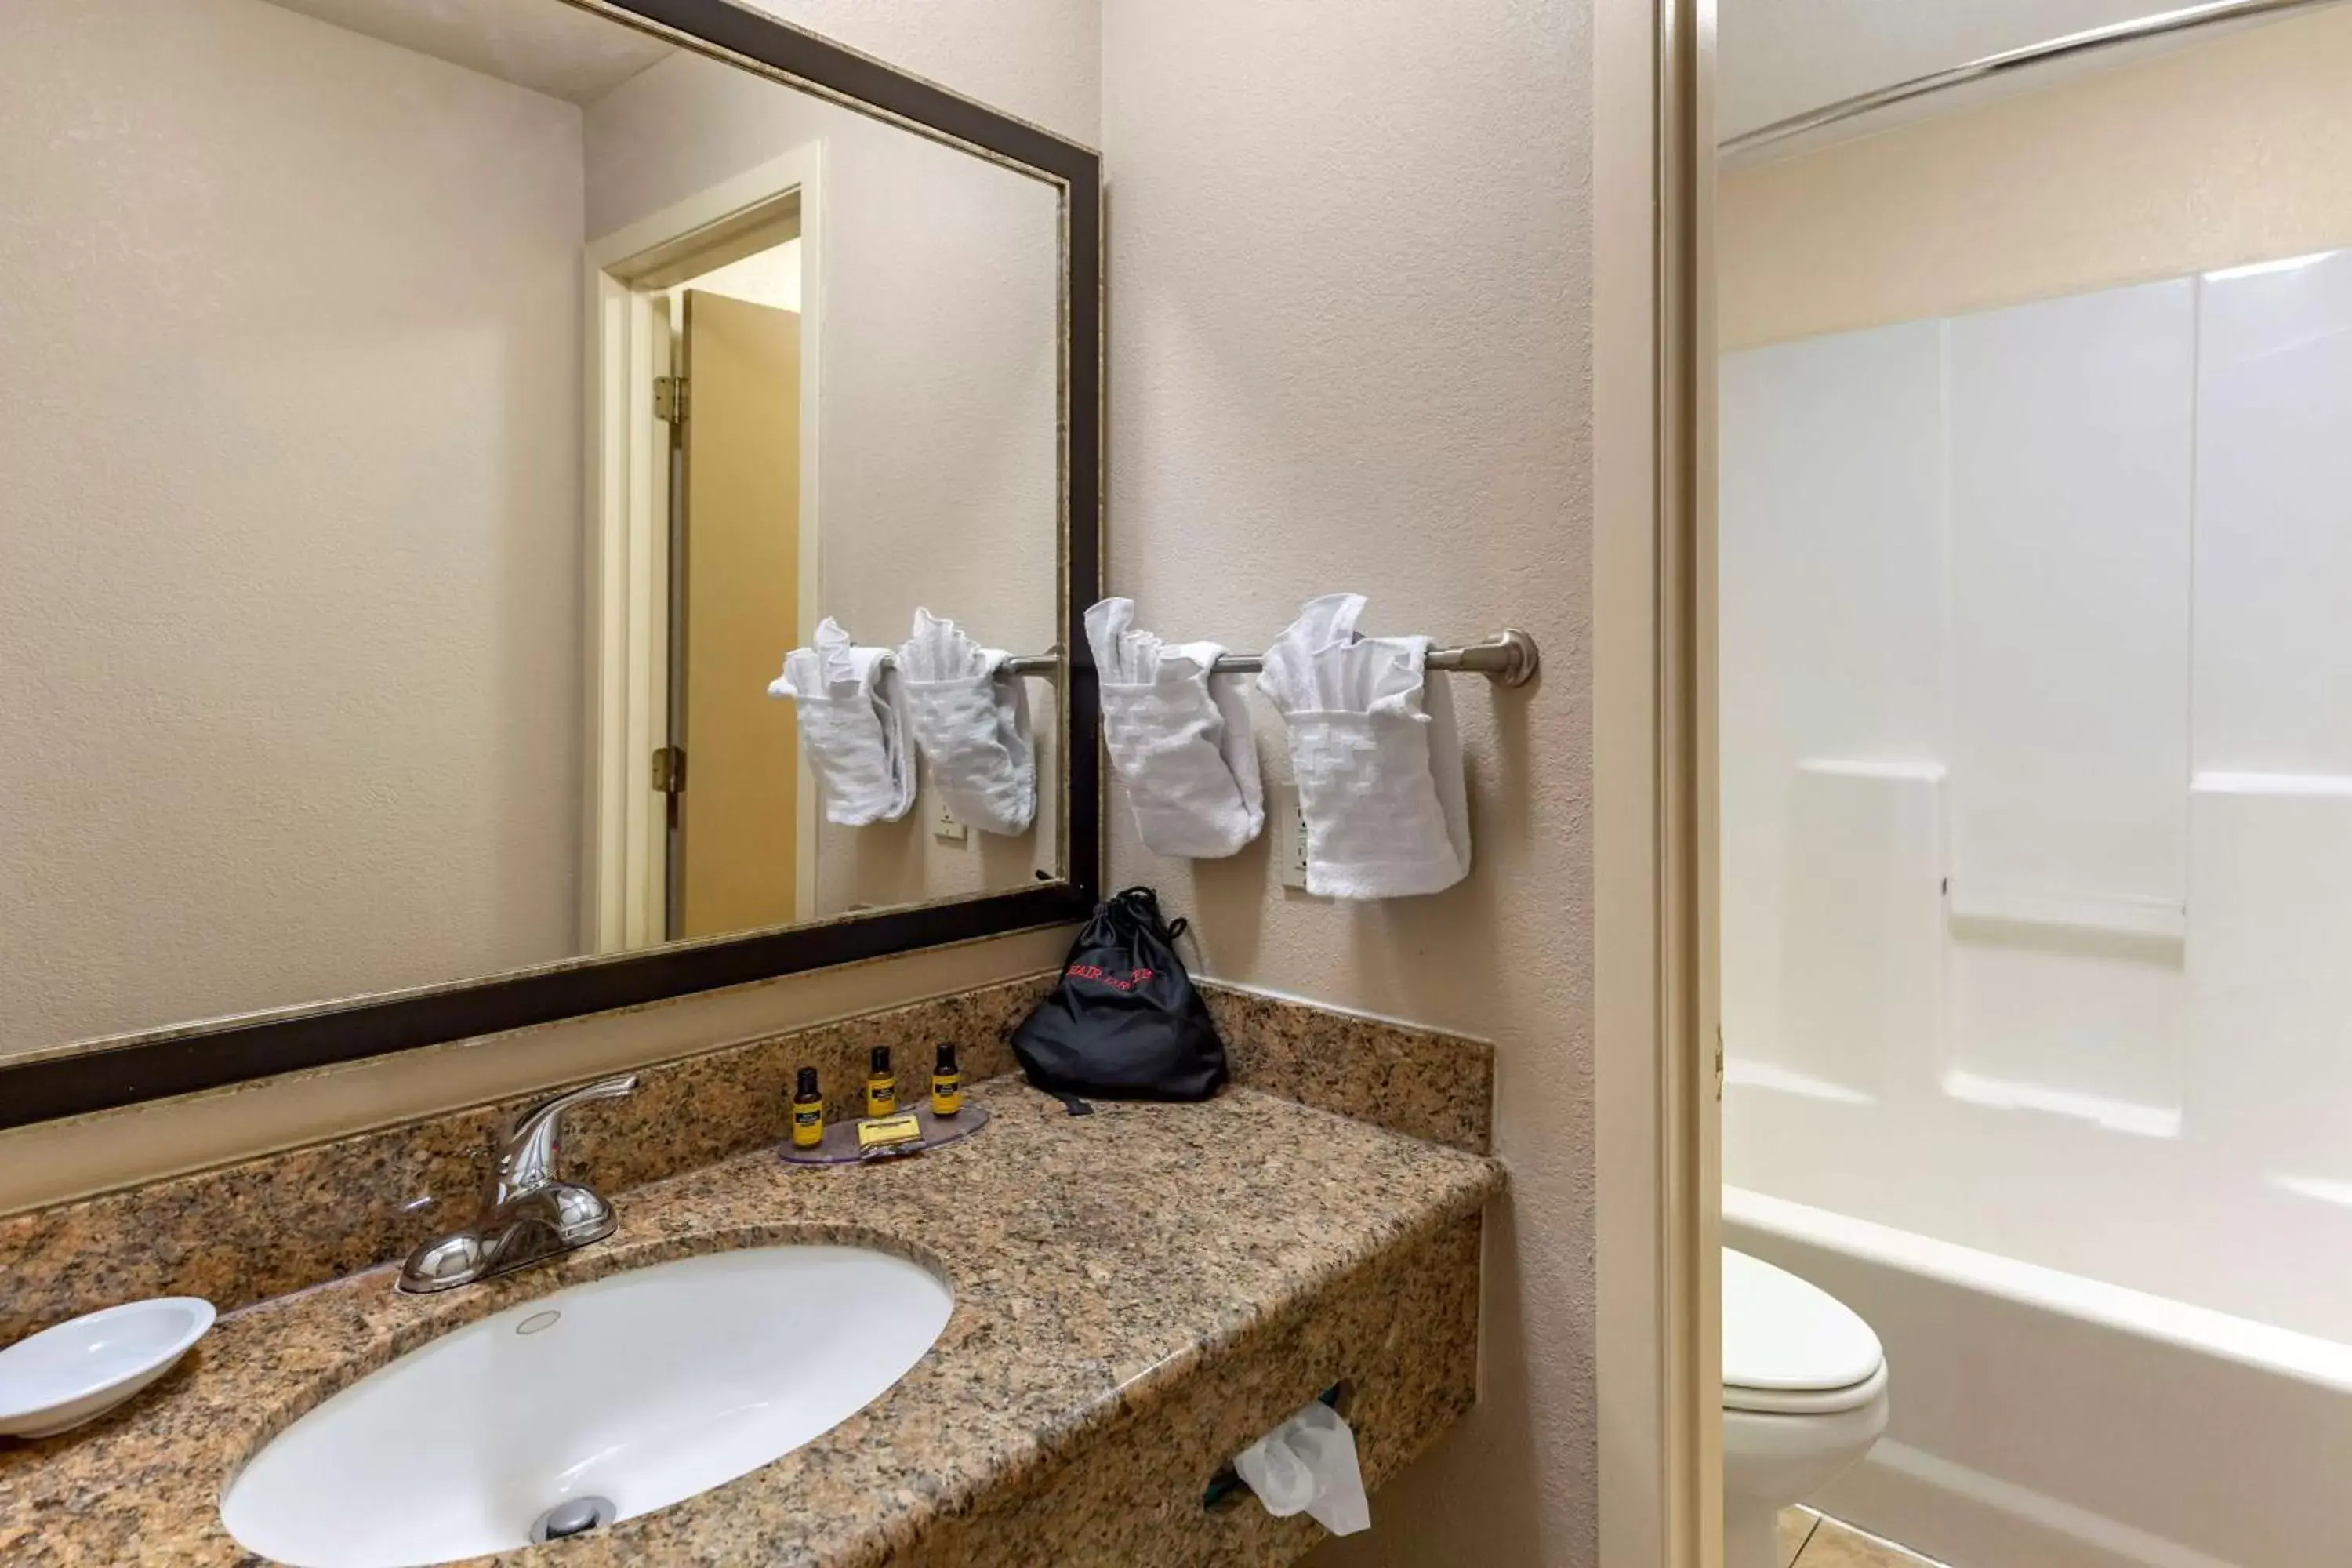 Bedroom, Bathroom in Best Western Plus Las Vegas West